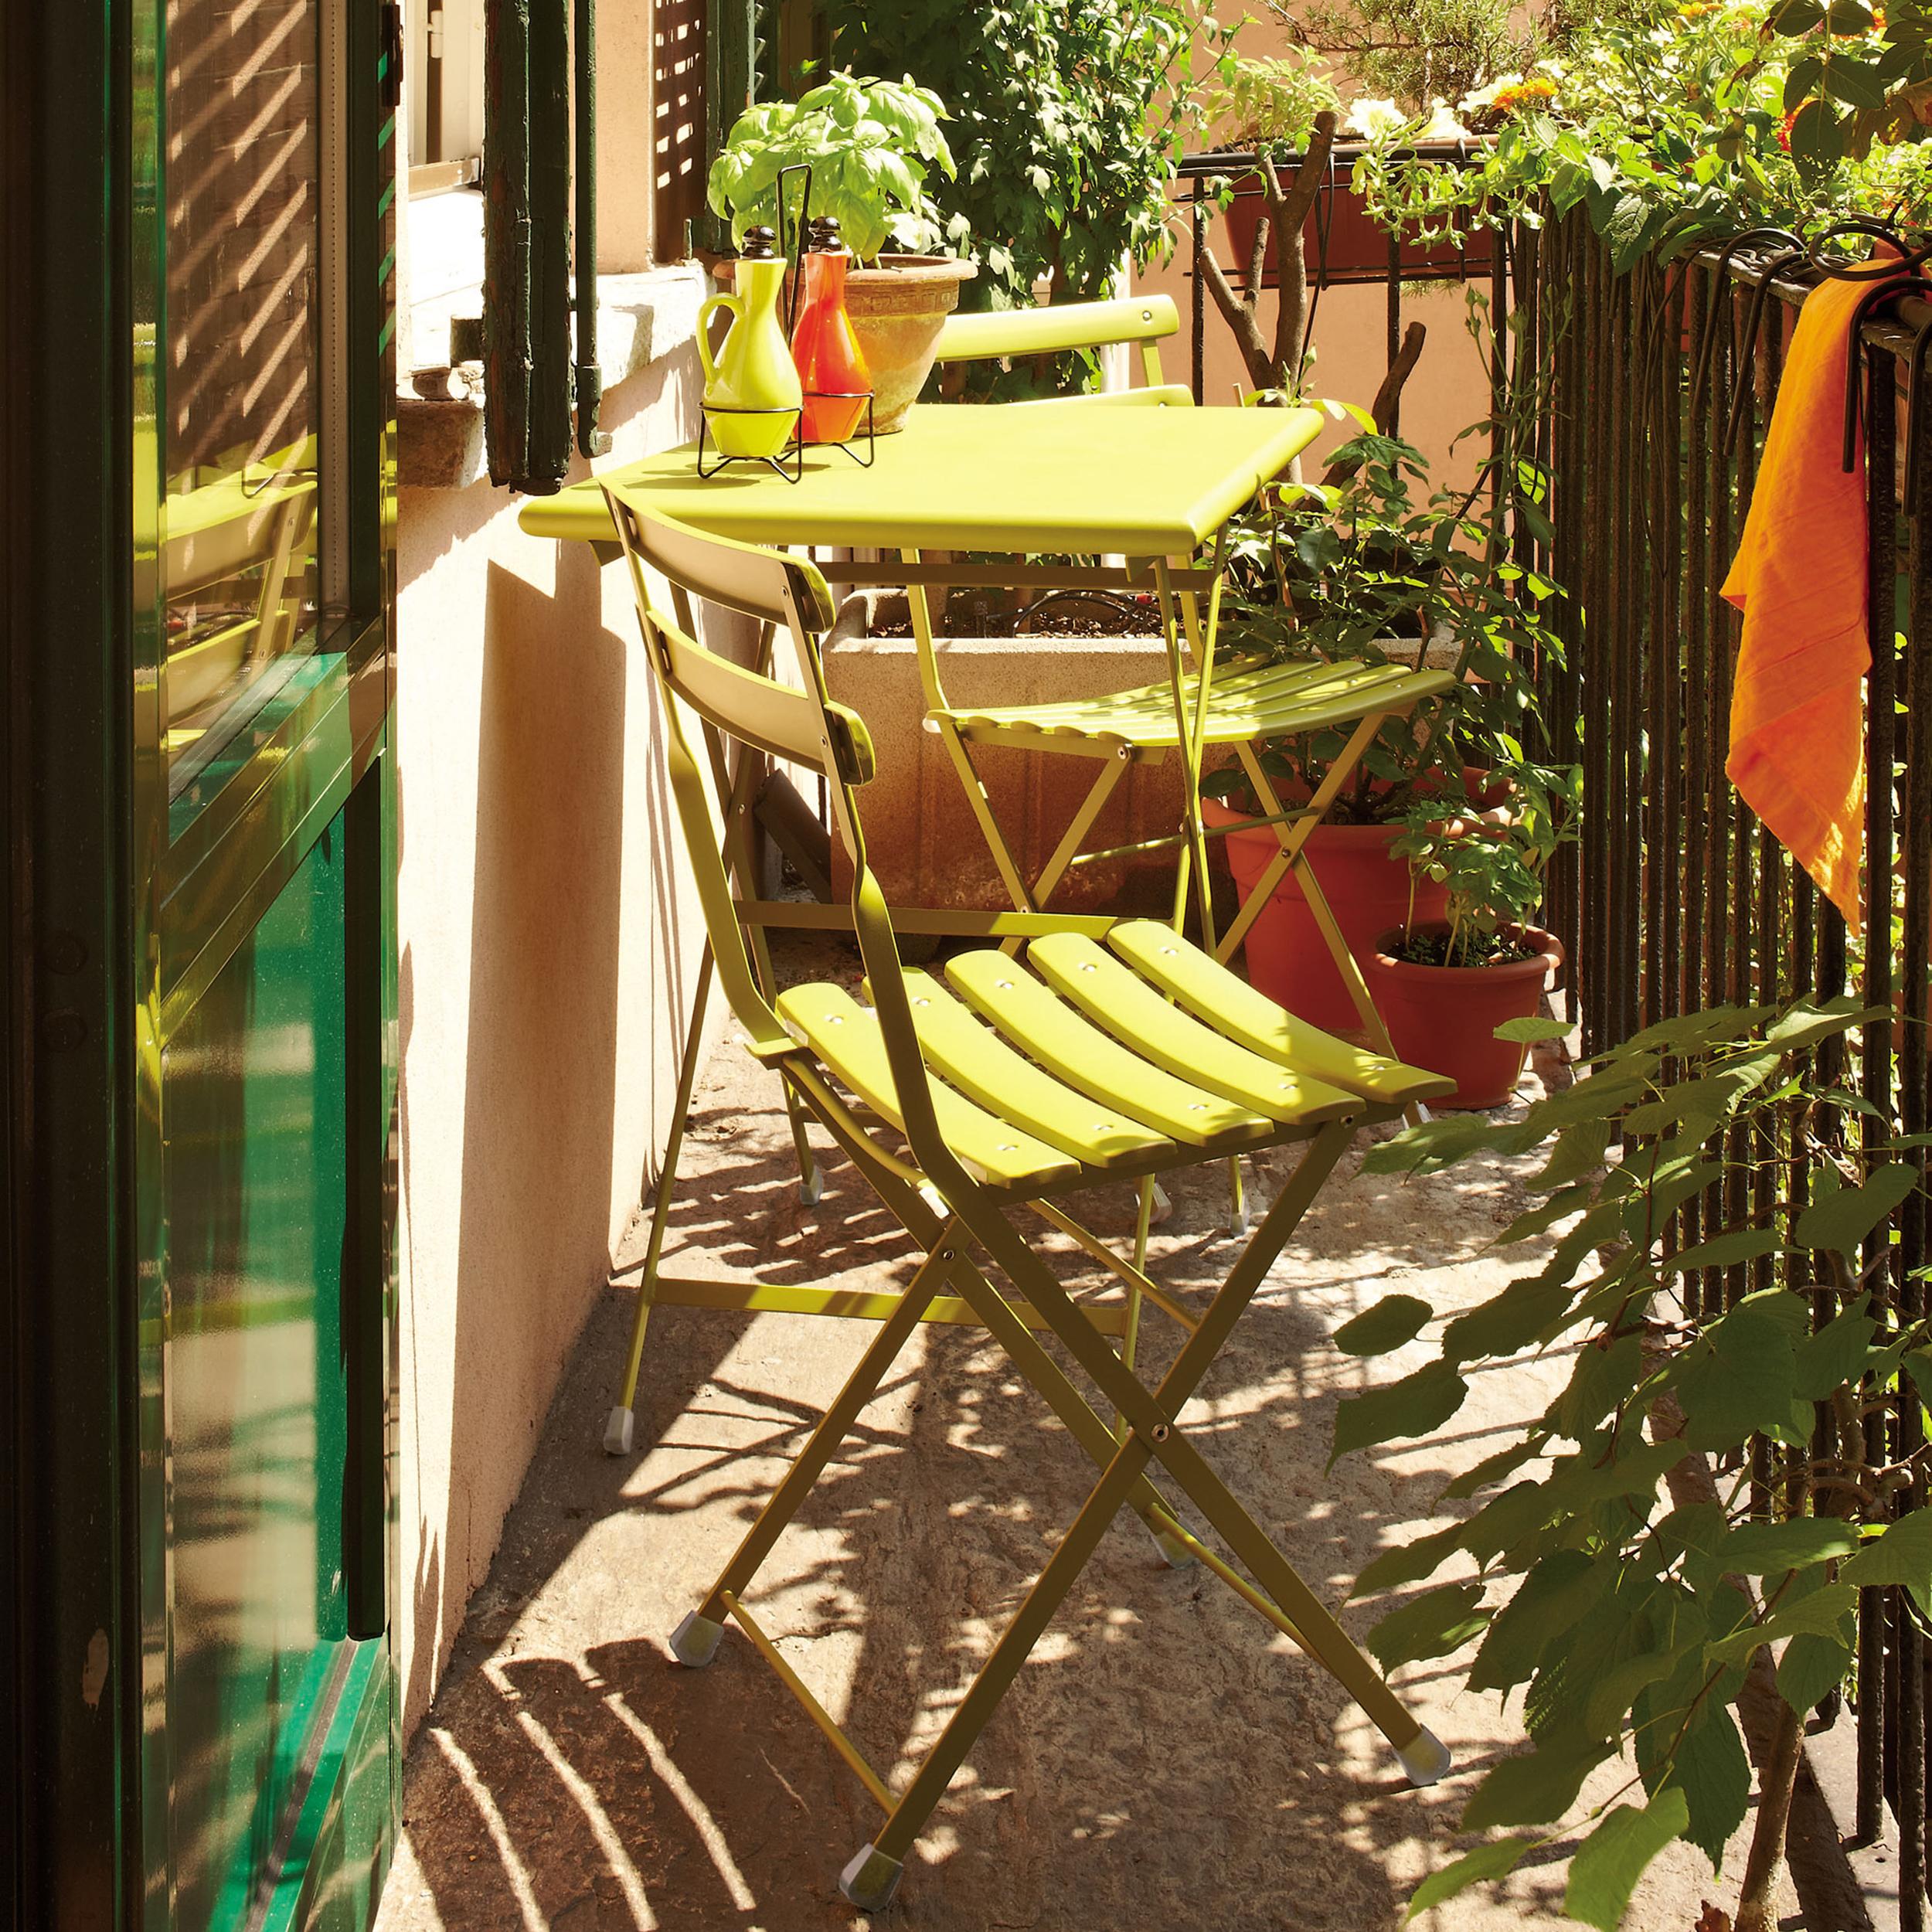 Gartenmöbel auf kleinem Raum #klapptisch #gartenmöbel #klappstuhl #gartentisch #balkonmöbel ©Emu